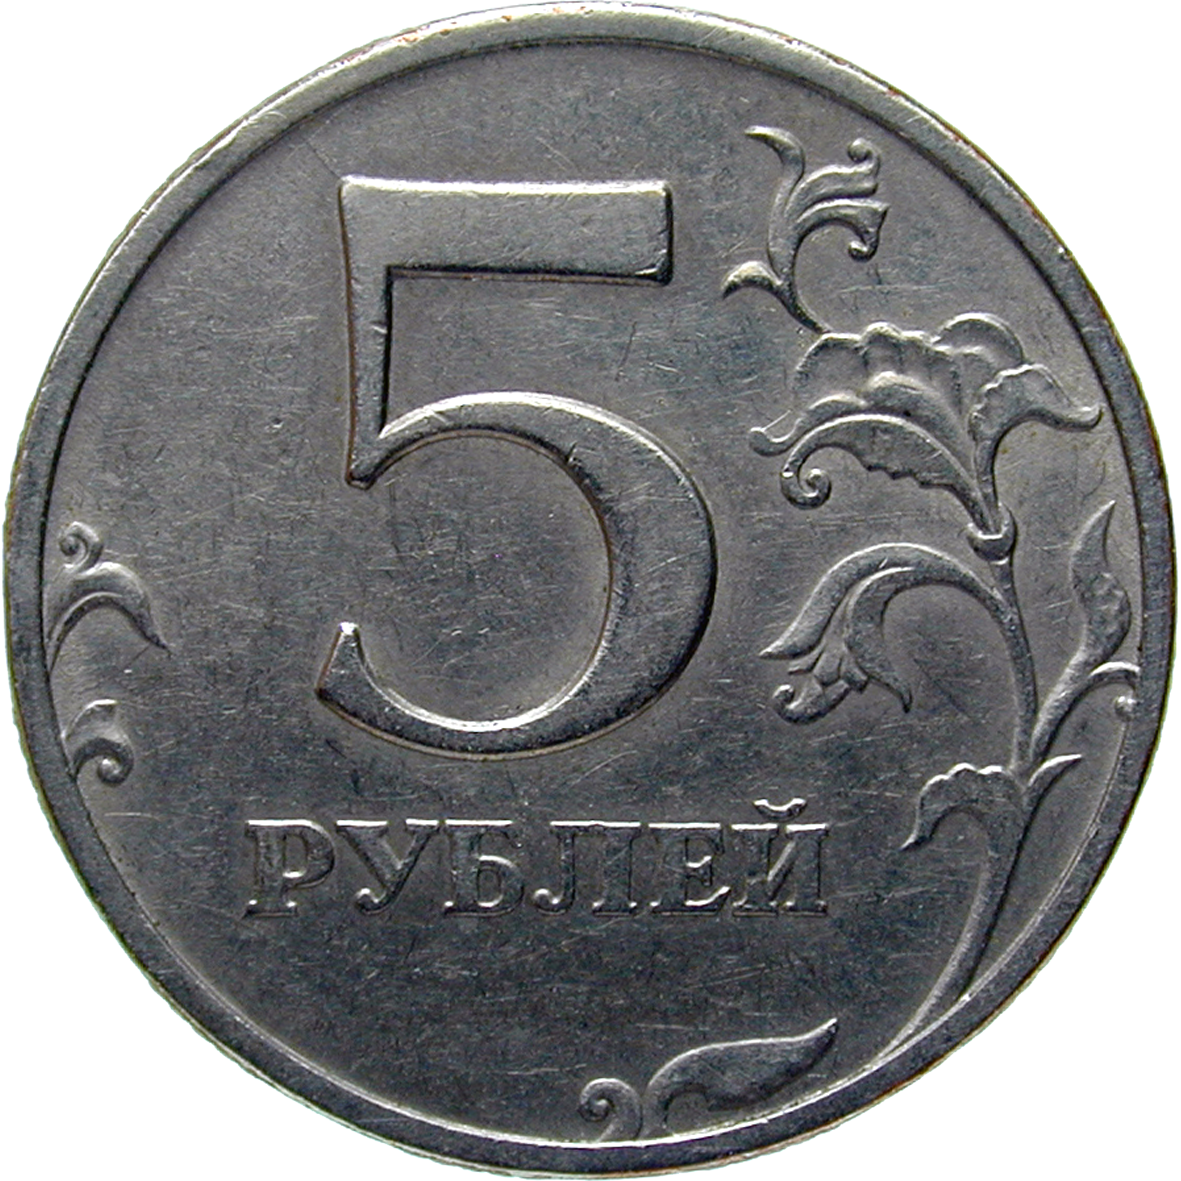 Russische Föderation, 5 Rubel 1997 (reverse)